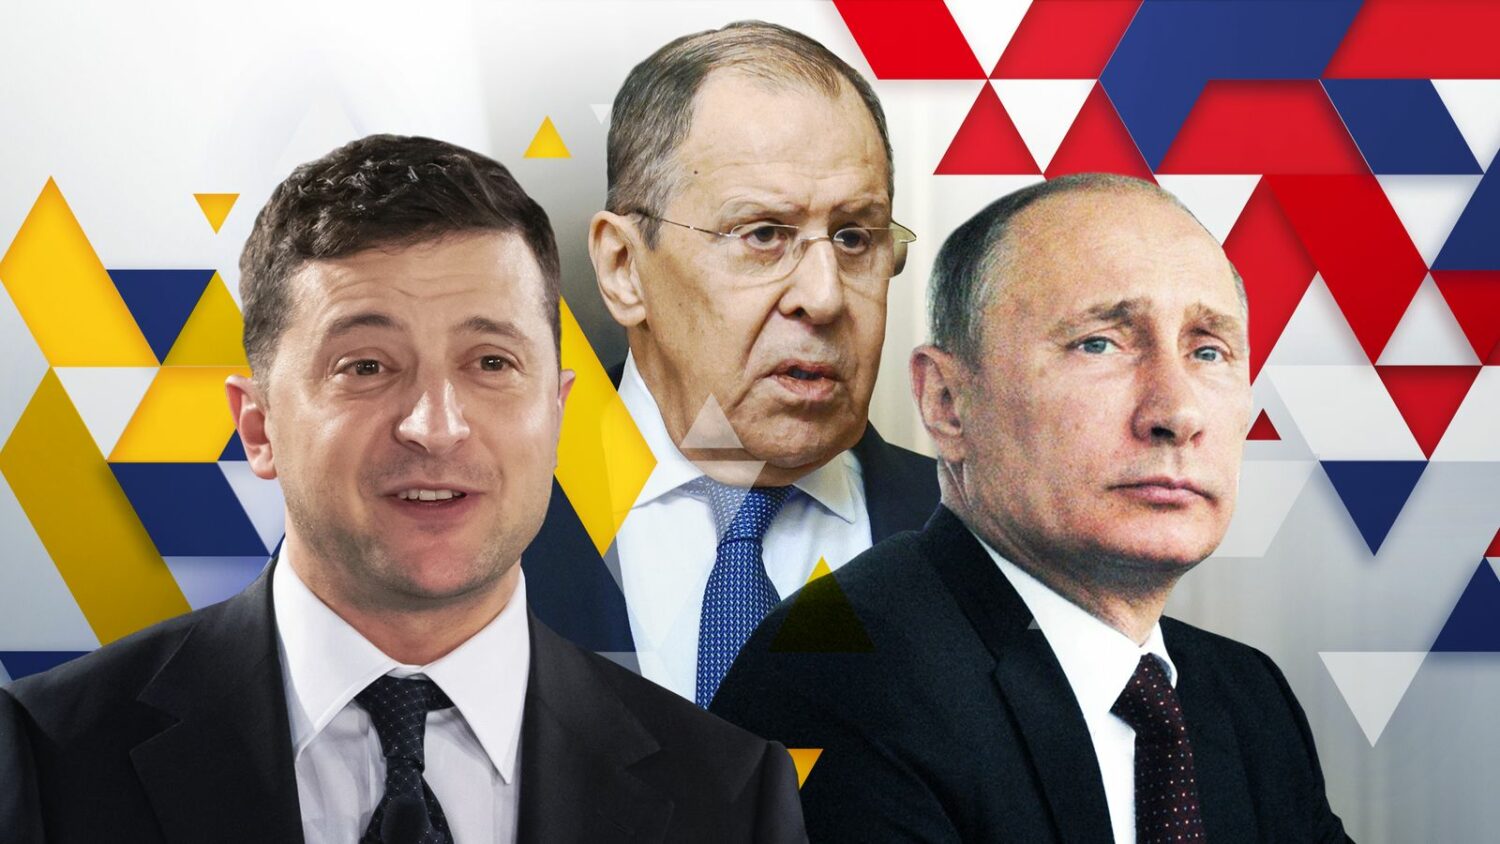 Οι 4 όροι που θέτει η Ρωσία στην Ουκρανία για να σταματήσει την εισβολή